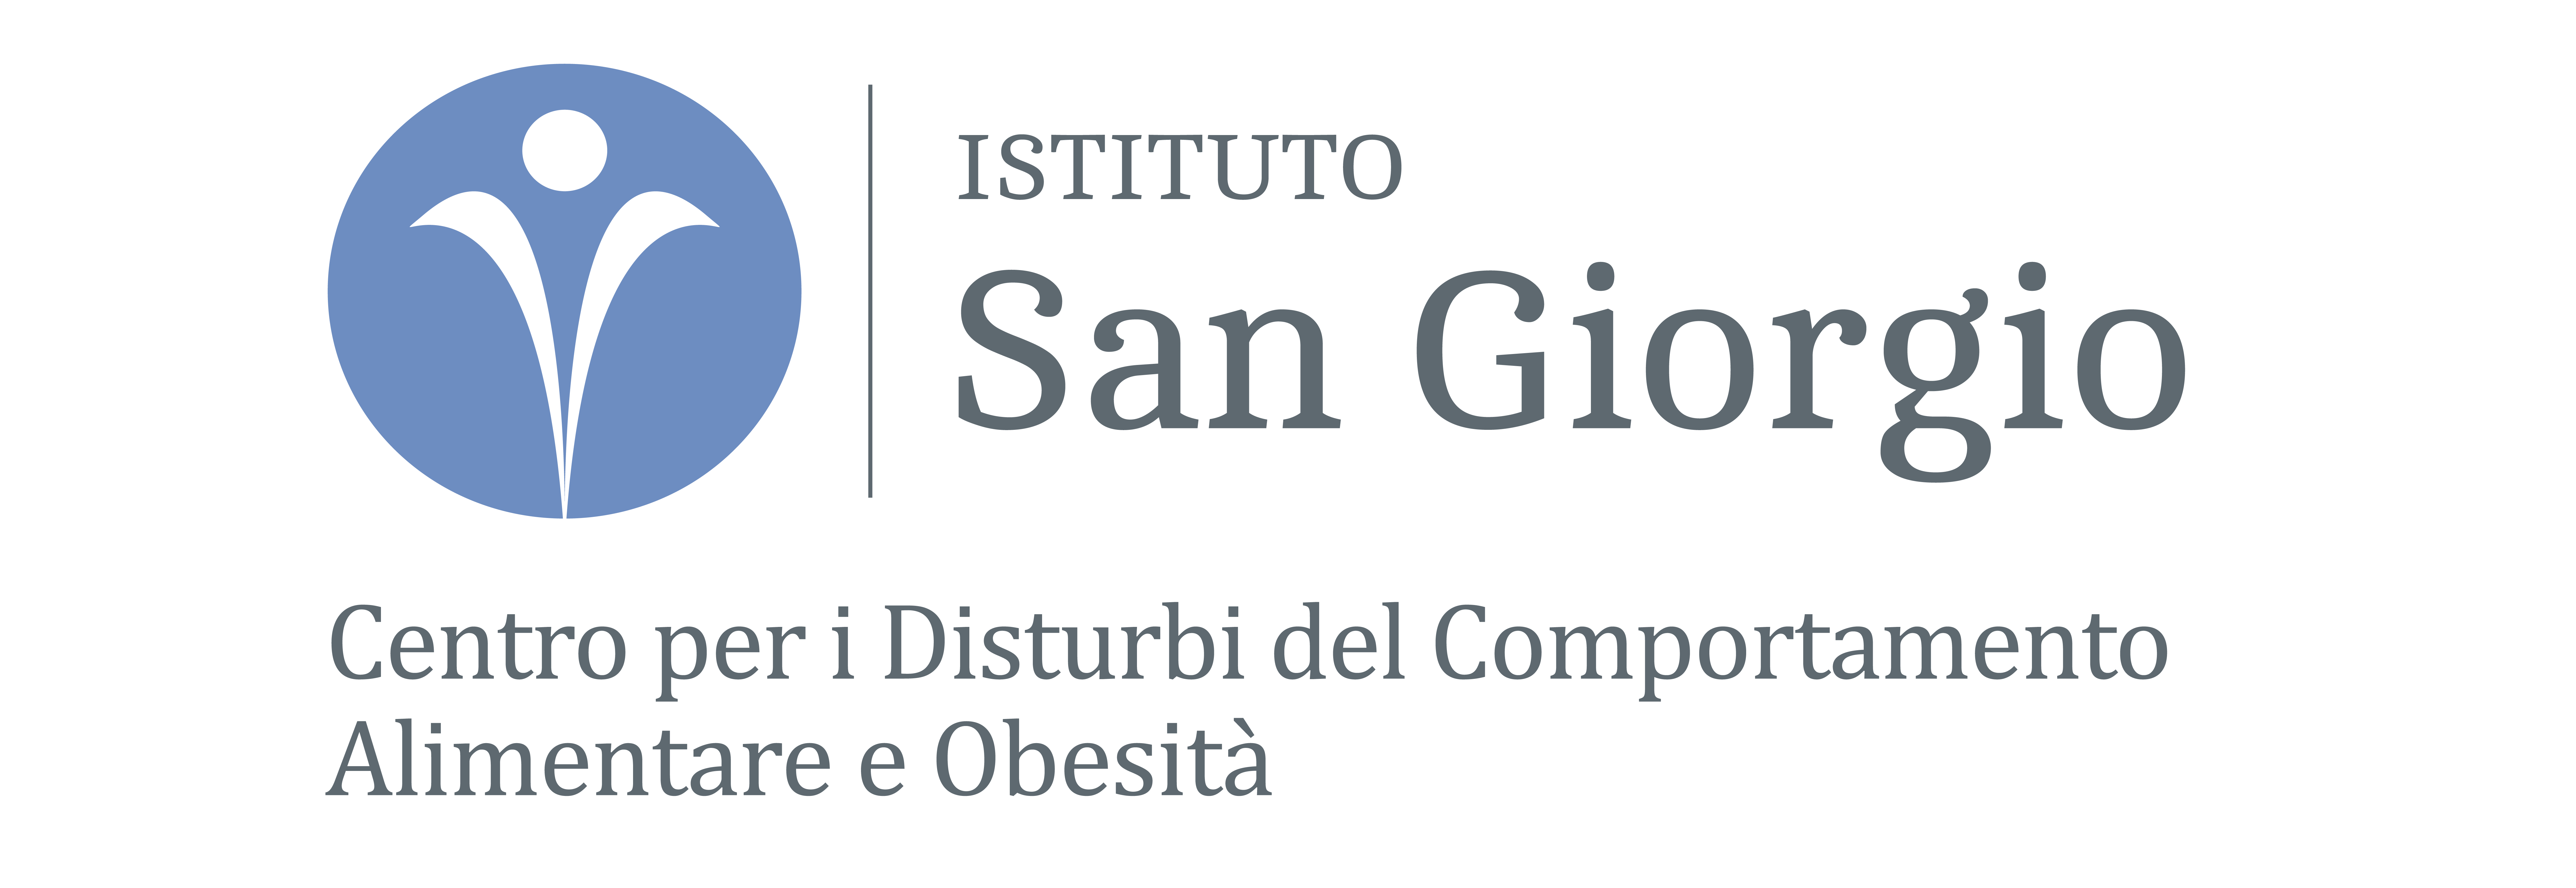 Istituto San Giorgio